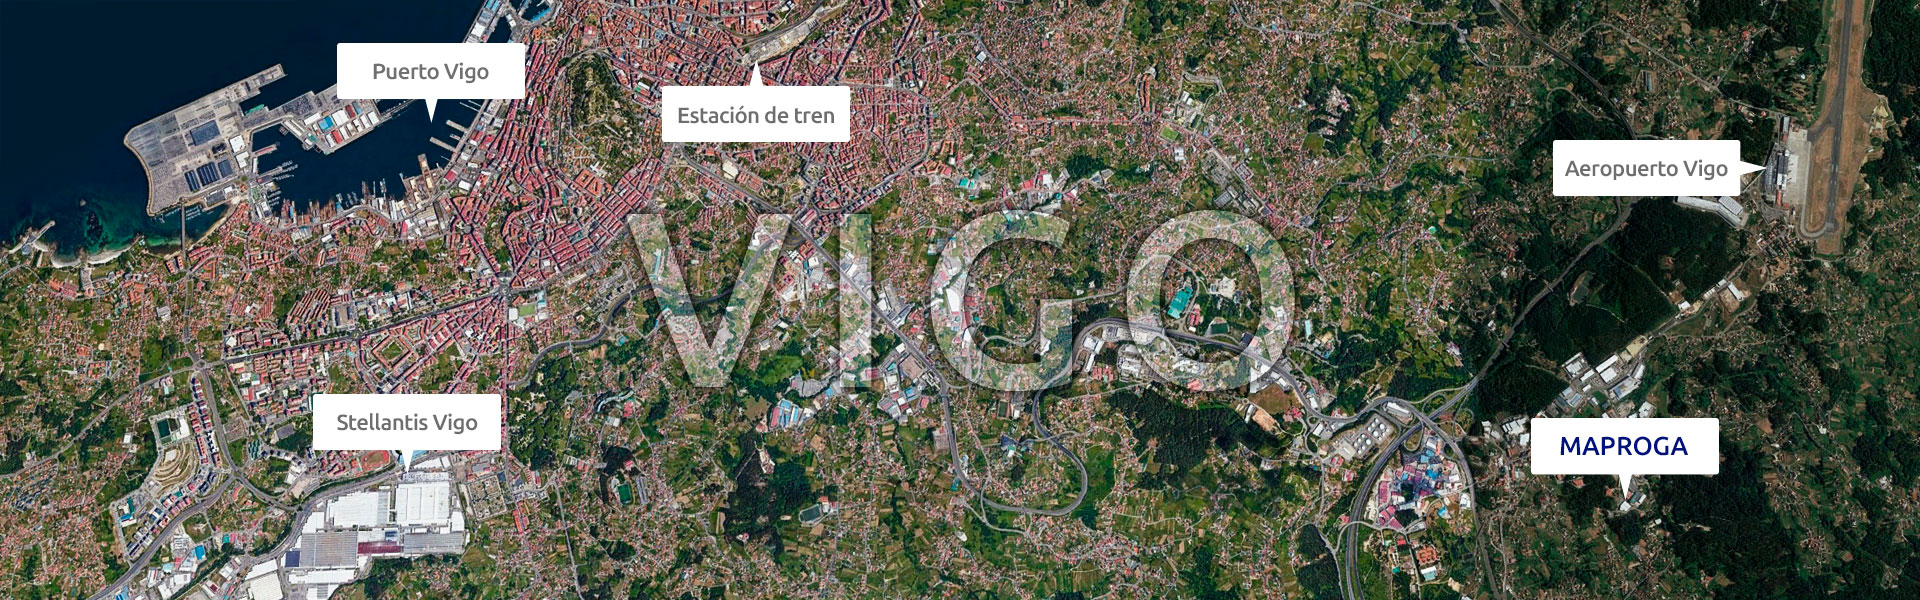 Imagen aérea con la localización de Maproga en Vigo